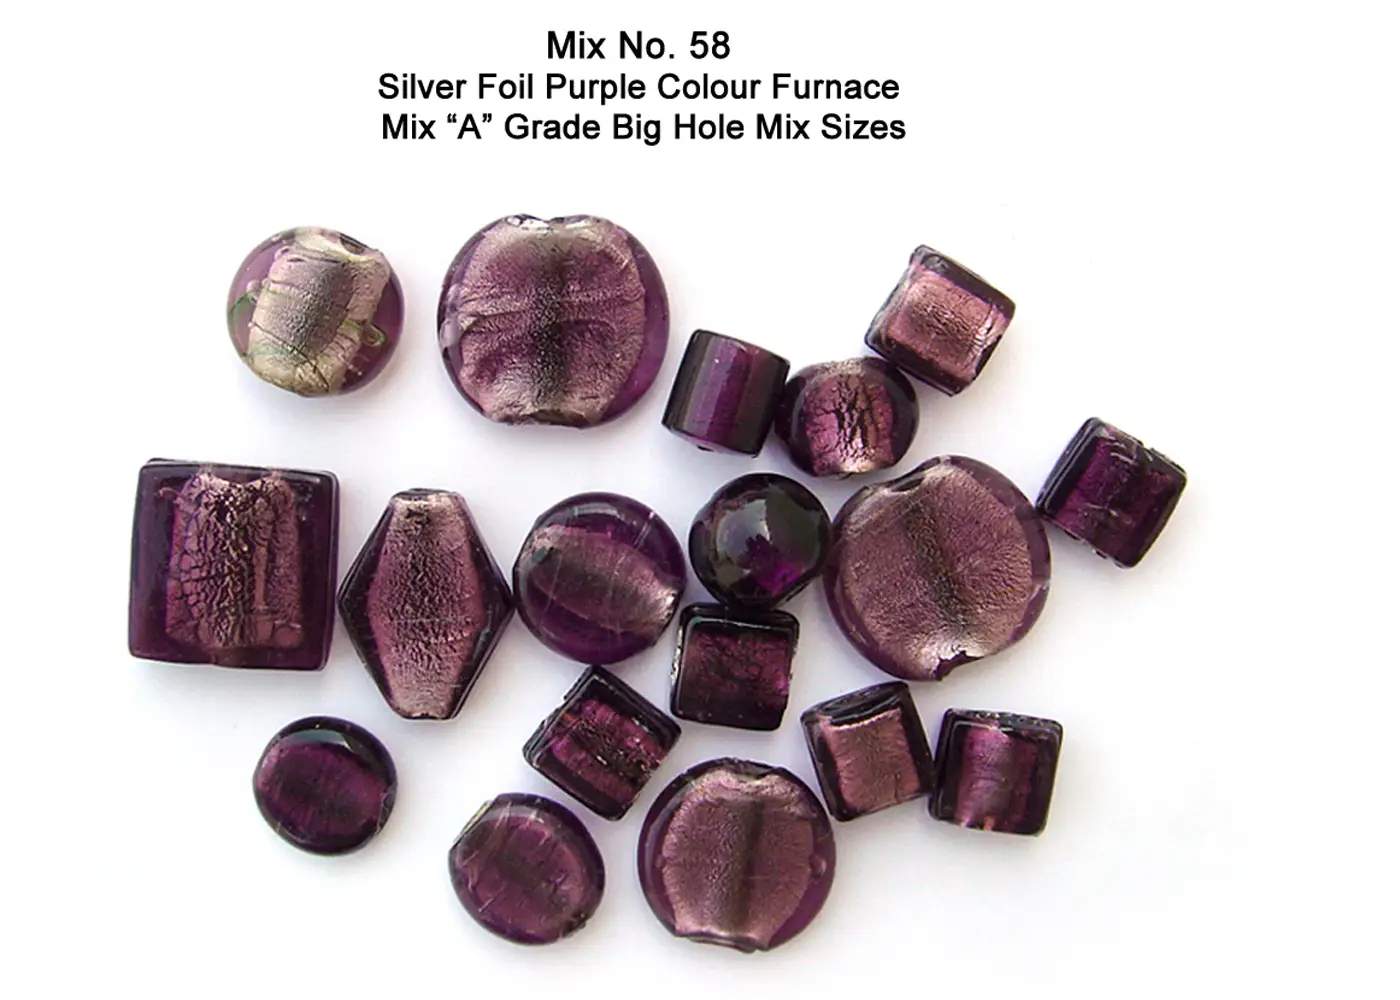 Silver Foil Purple Color Furnace Mix "A" Grade Big Hole mix sizes